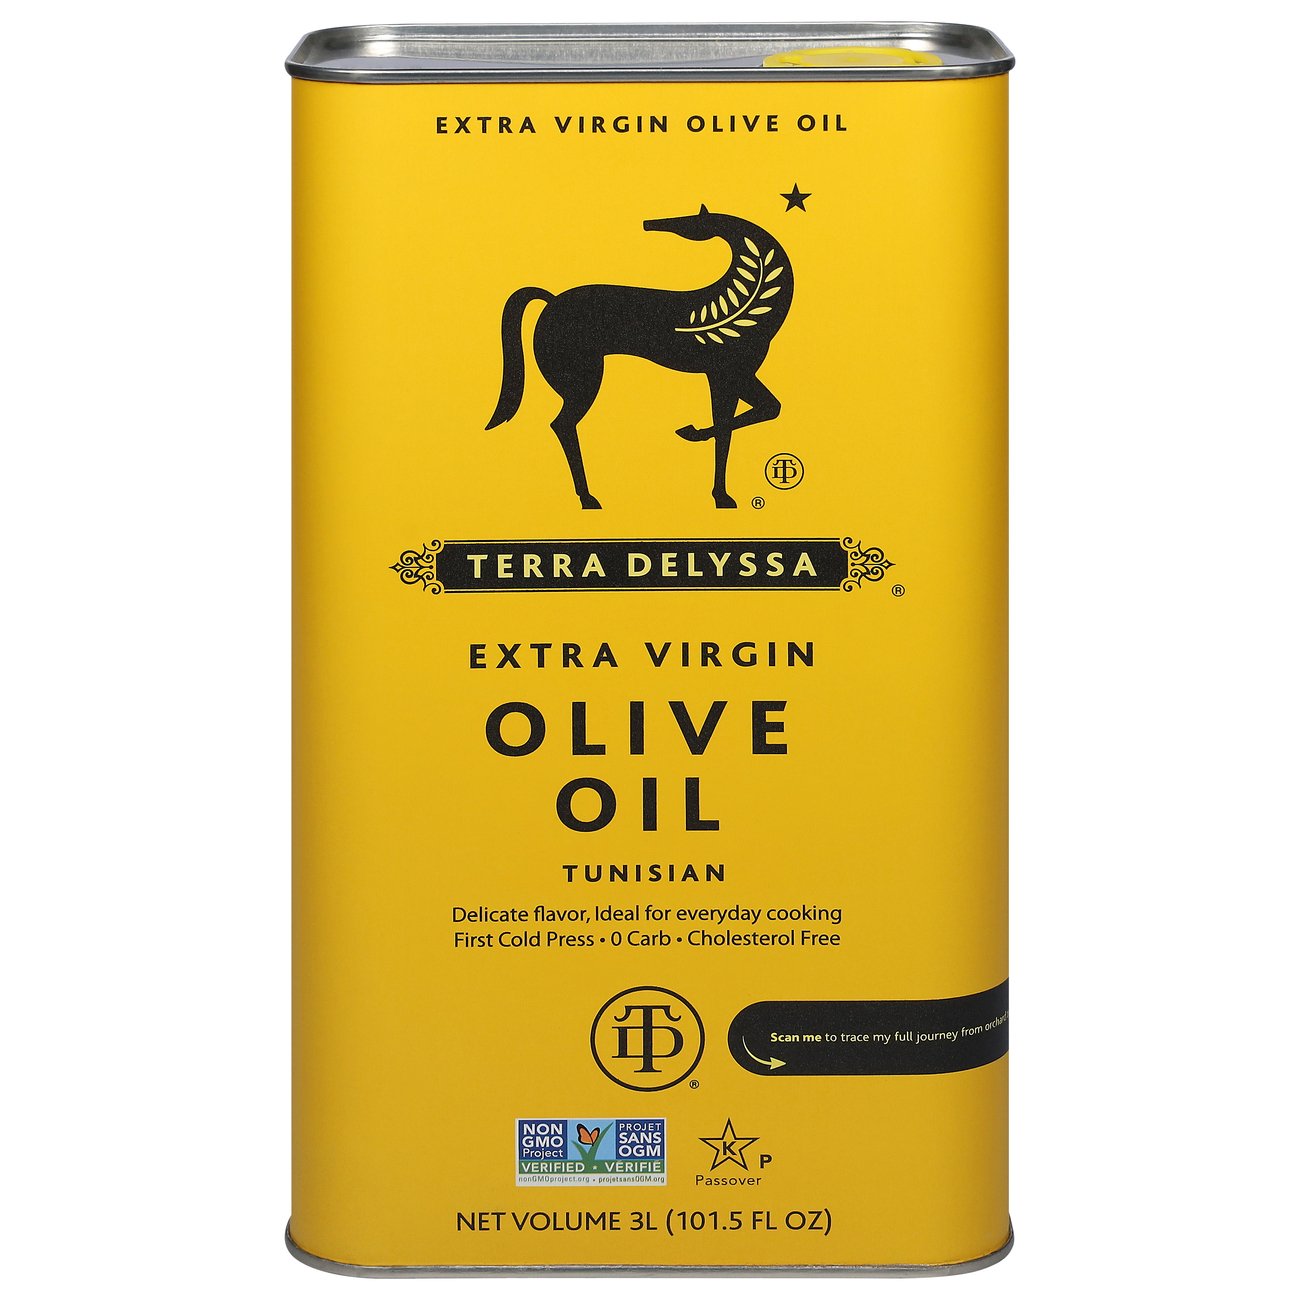 Terra Delyssa Extra Virgin Olive Oil Tin - Shop Oils at H-E-B